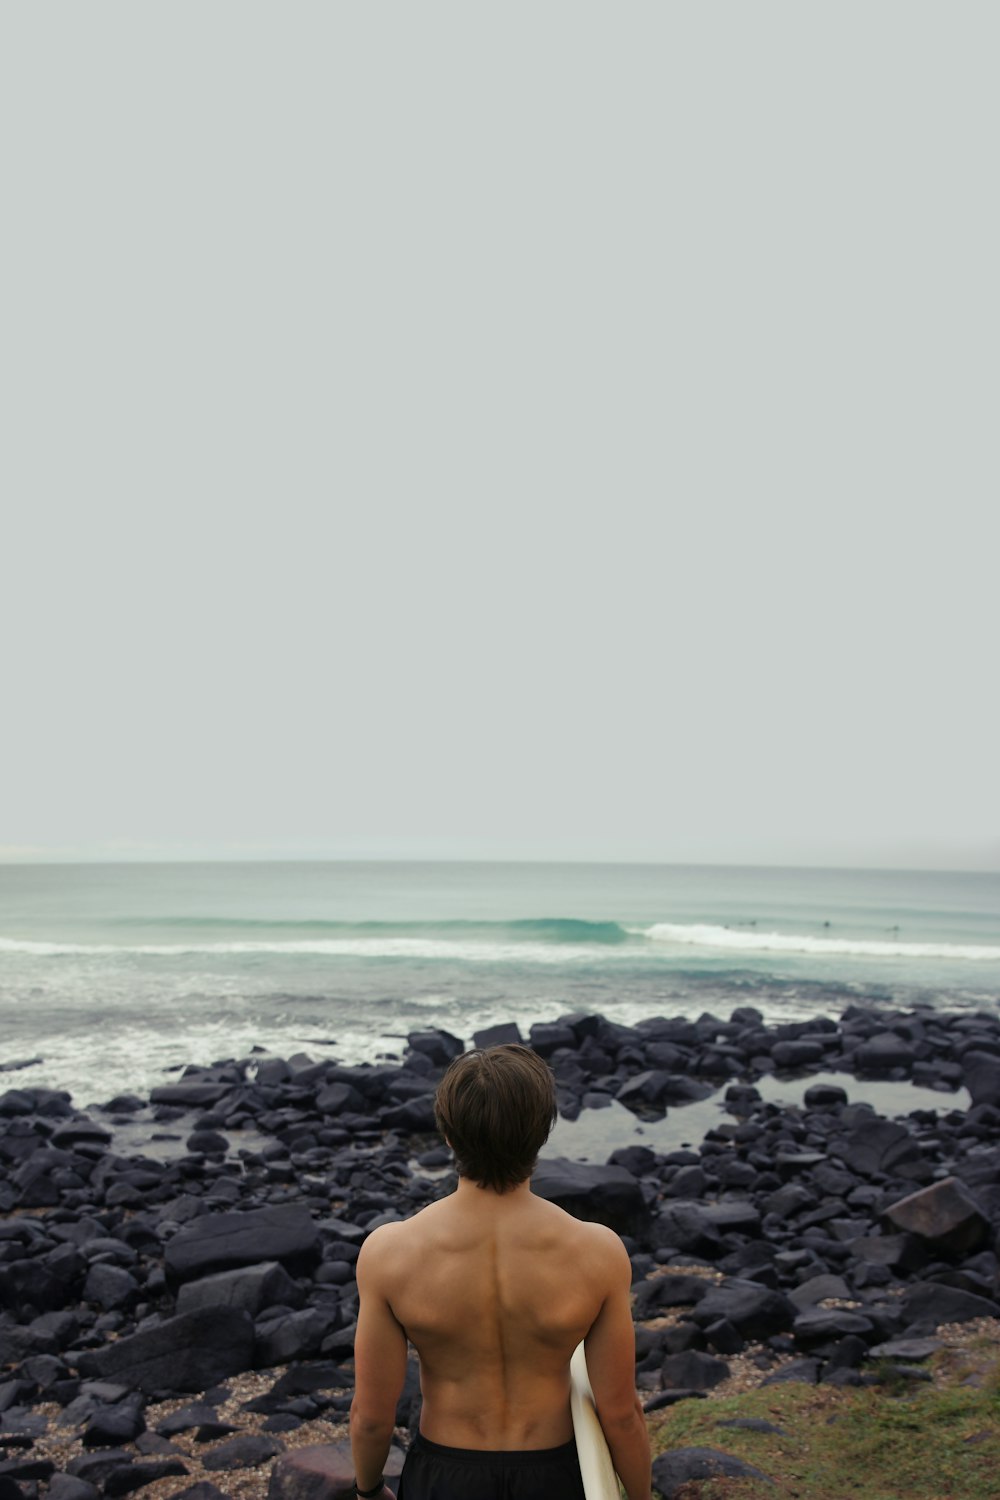 바다 근처에서 서핑 보드를 들고 있는 남자